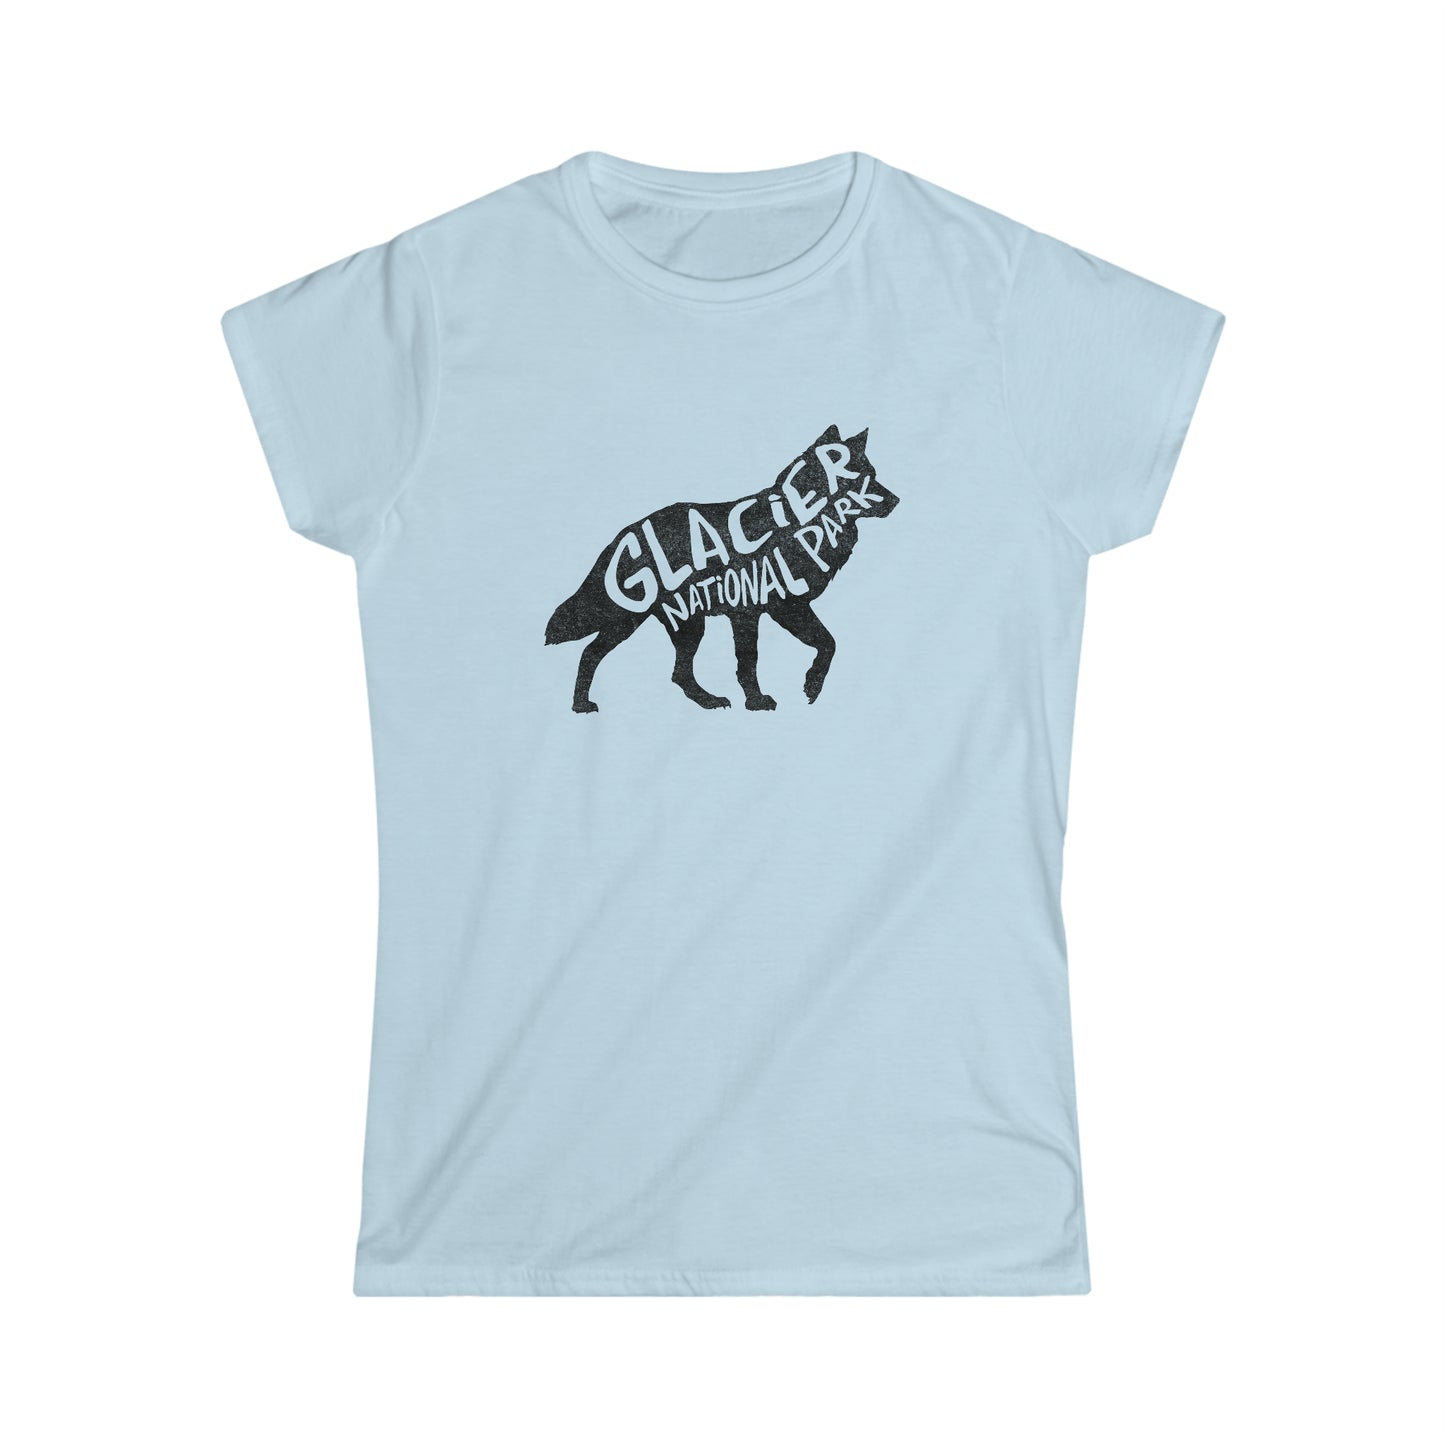 Glacier National Park Women's T-Shirt - Wolf